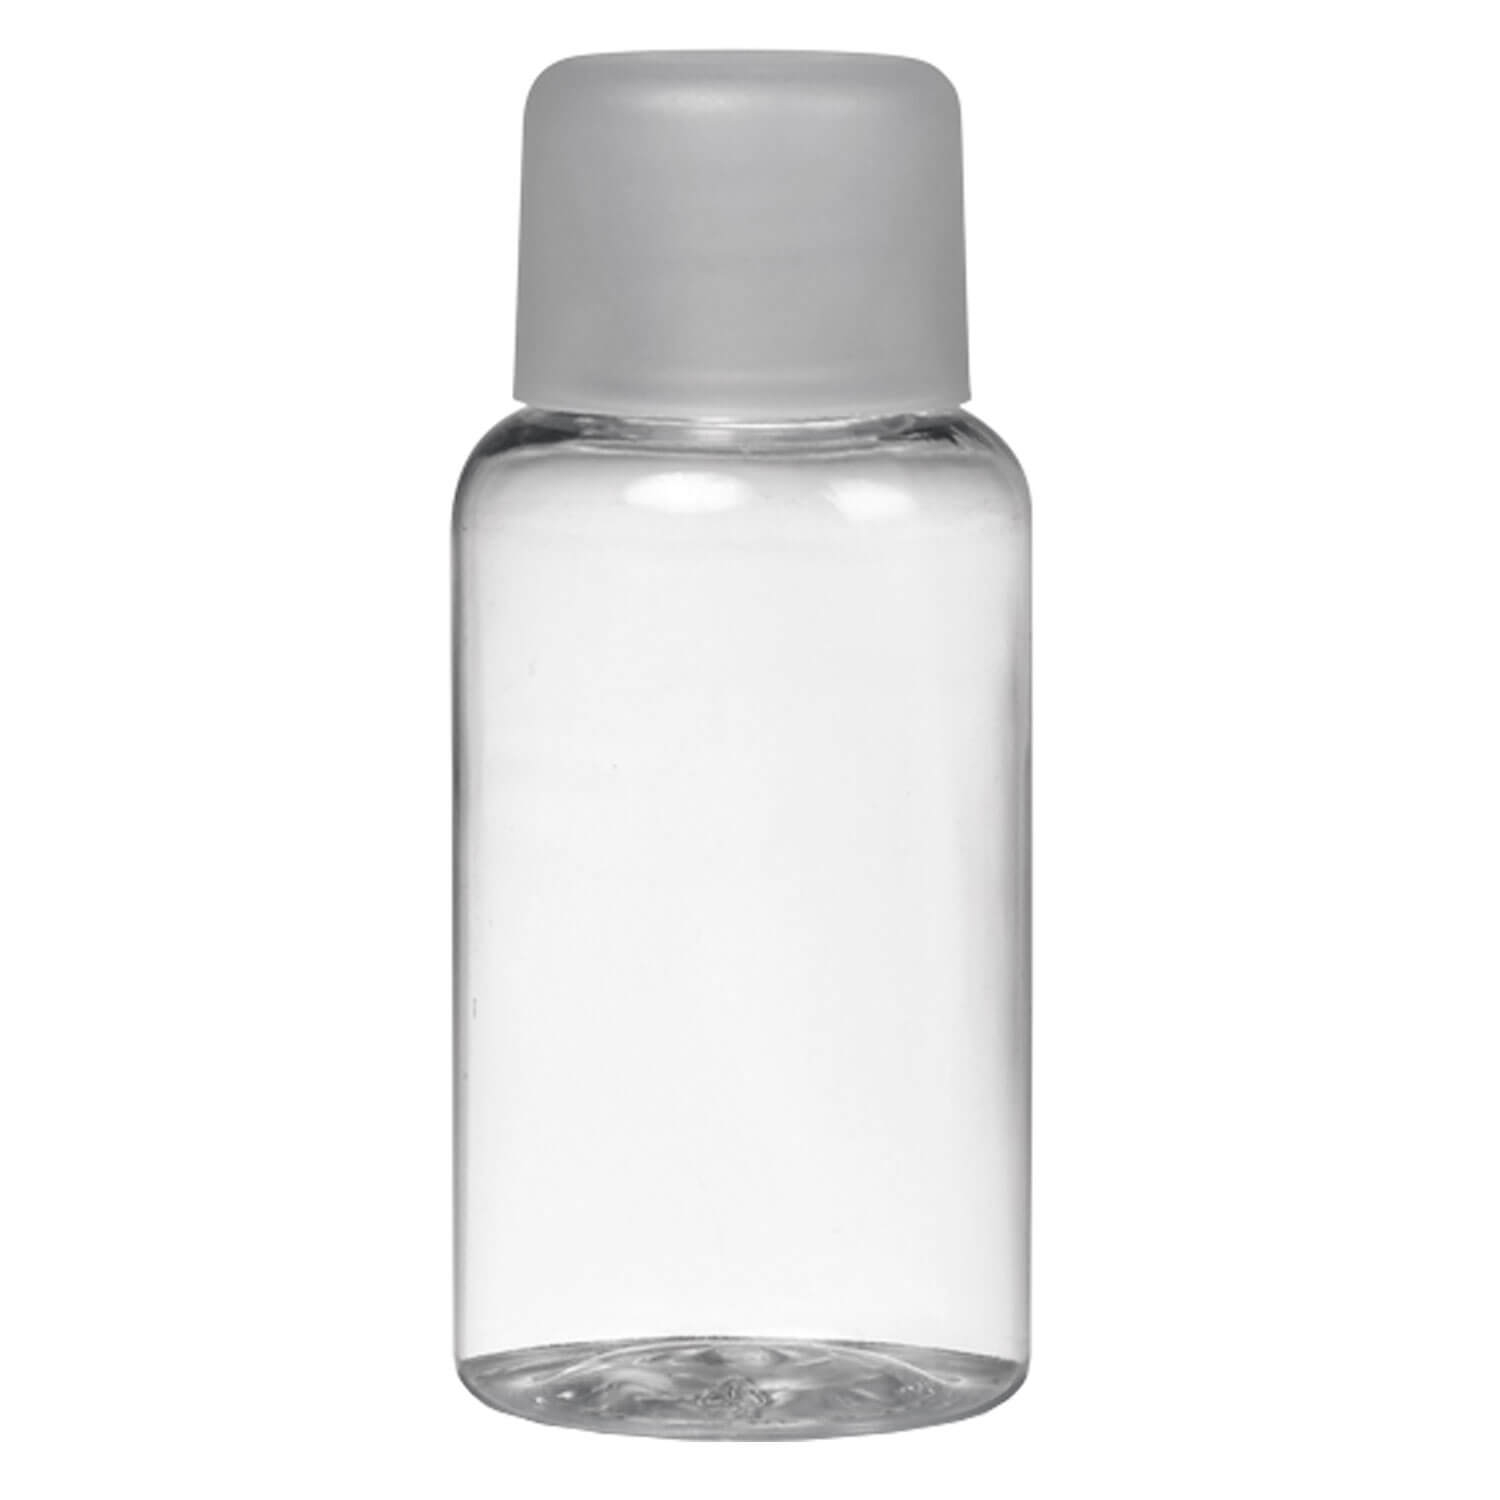 Produktbild von TRISA Travel - Lotionsflasche Mittel